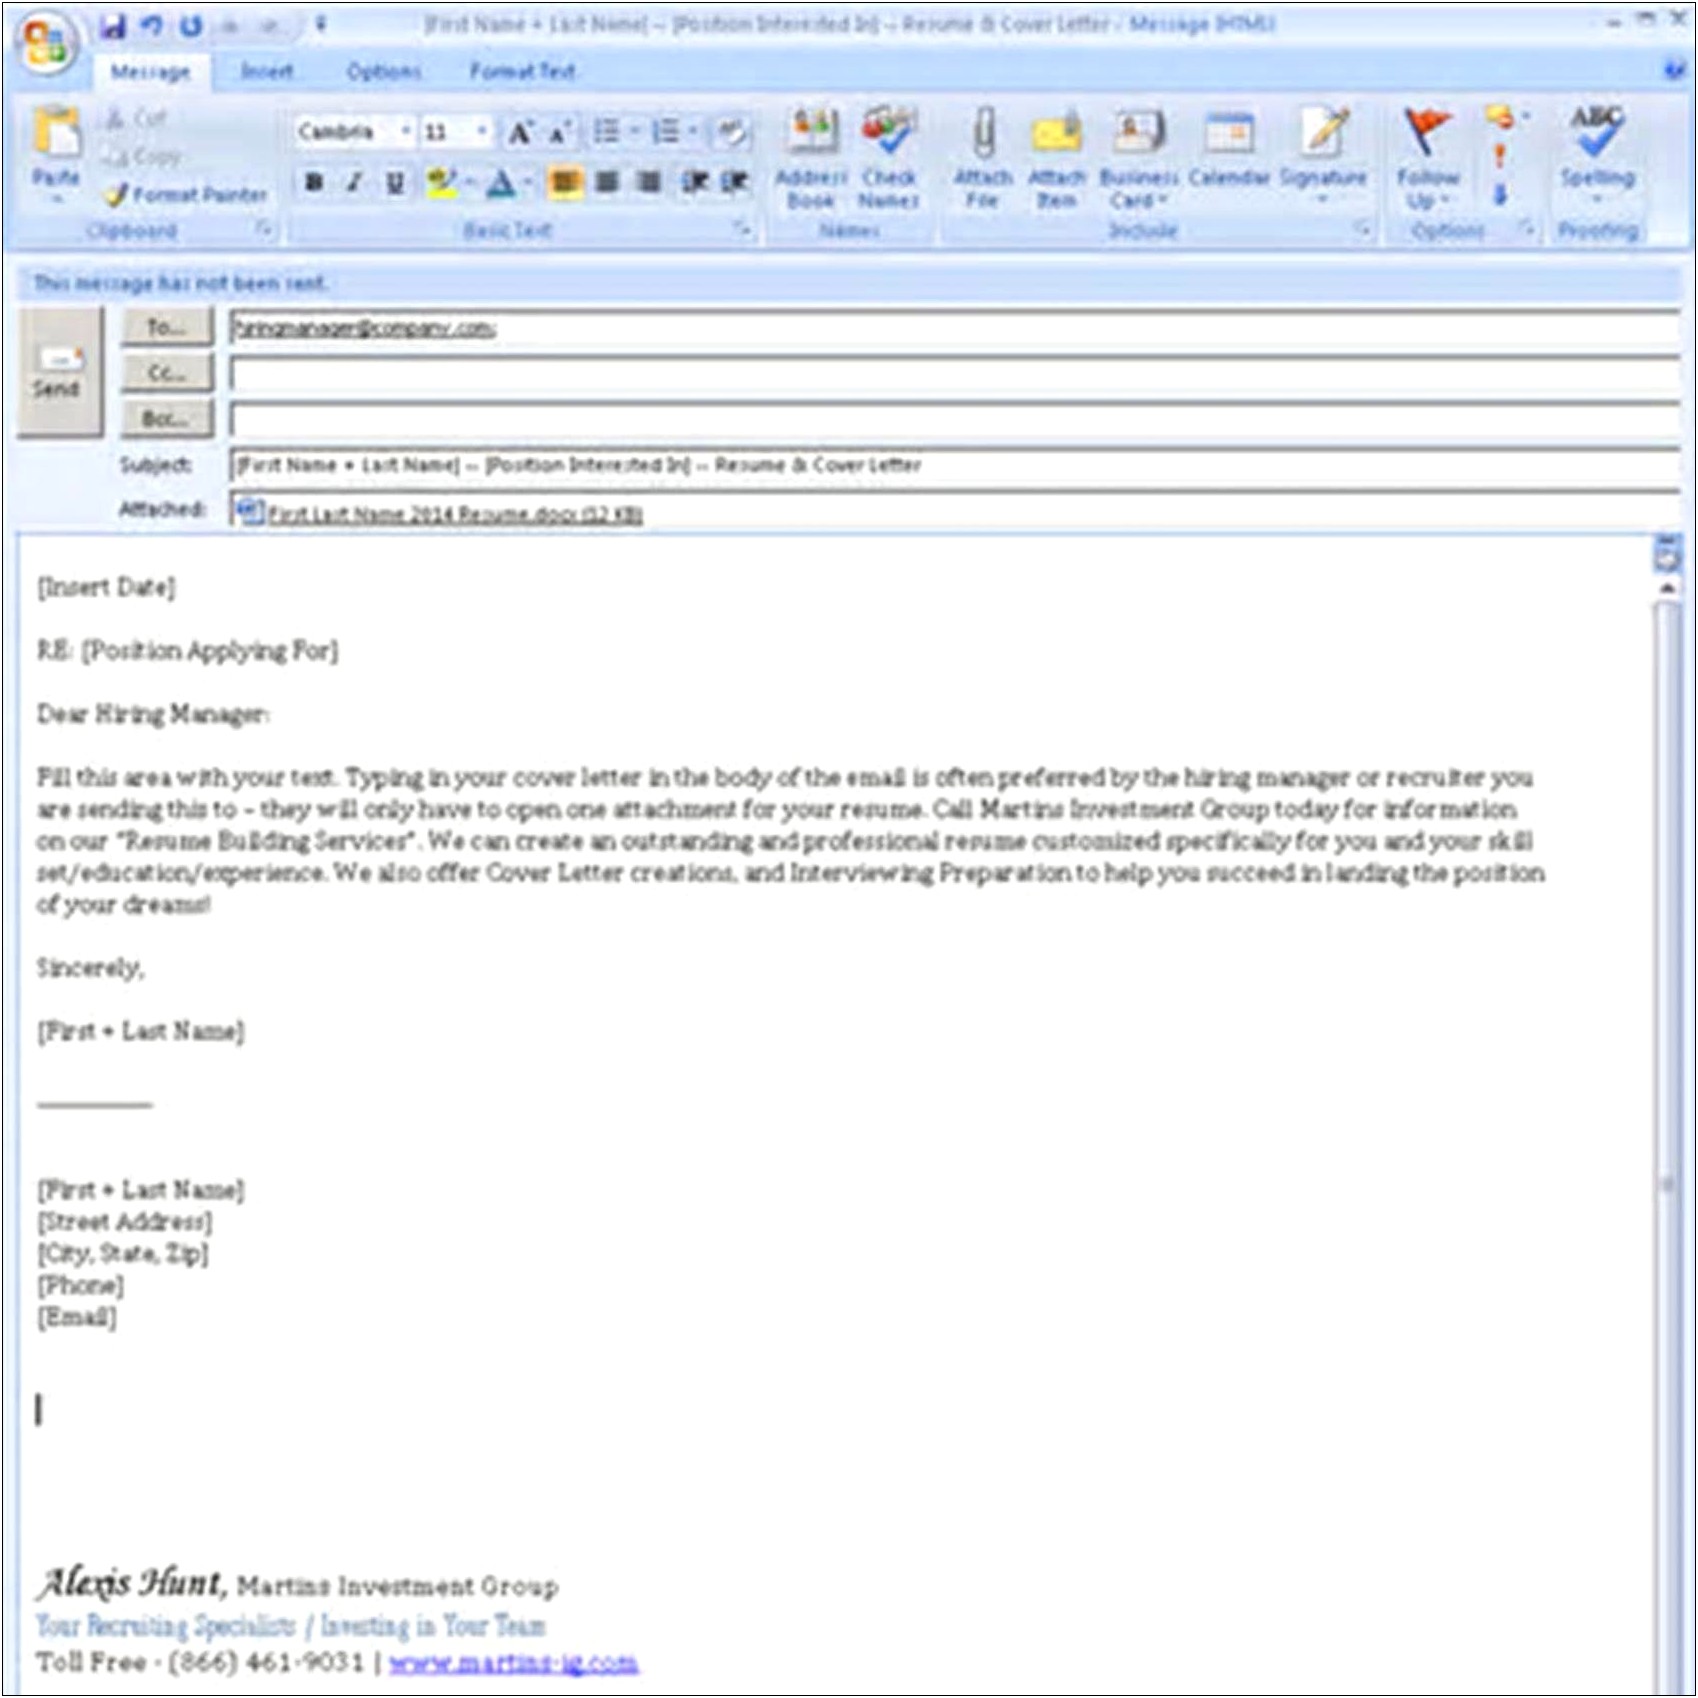 Sample Cover Letter For Sending Resume Via Email